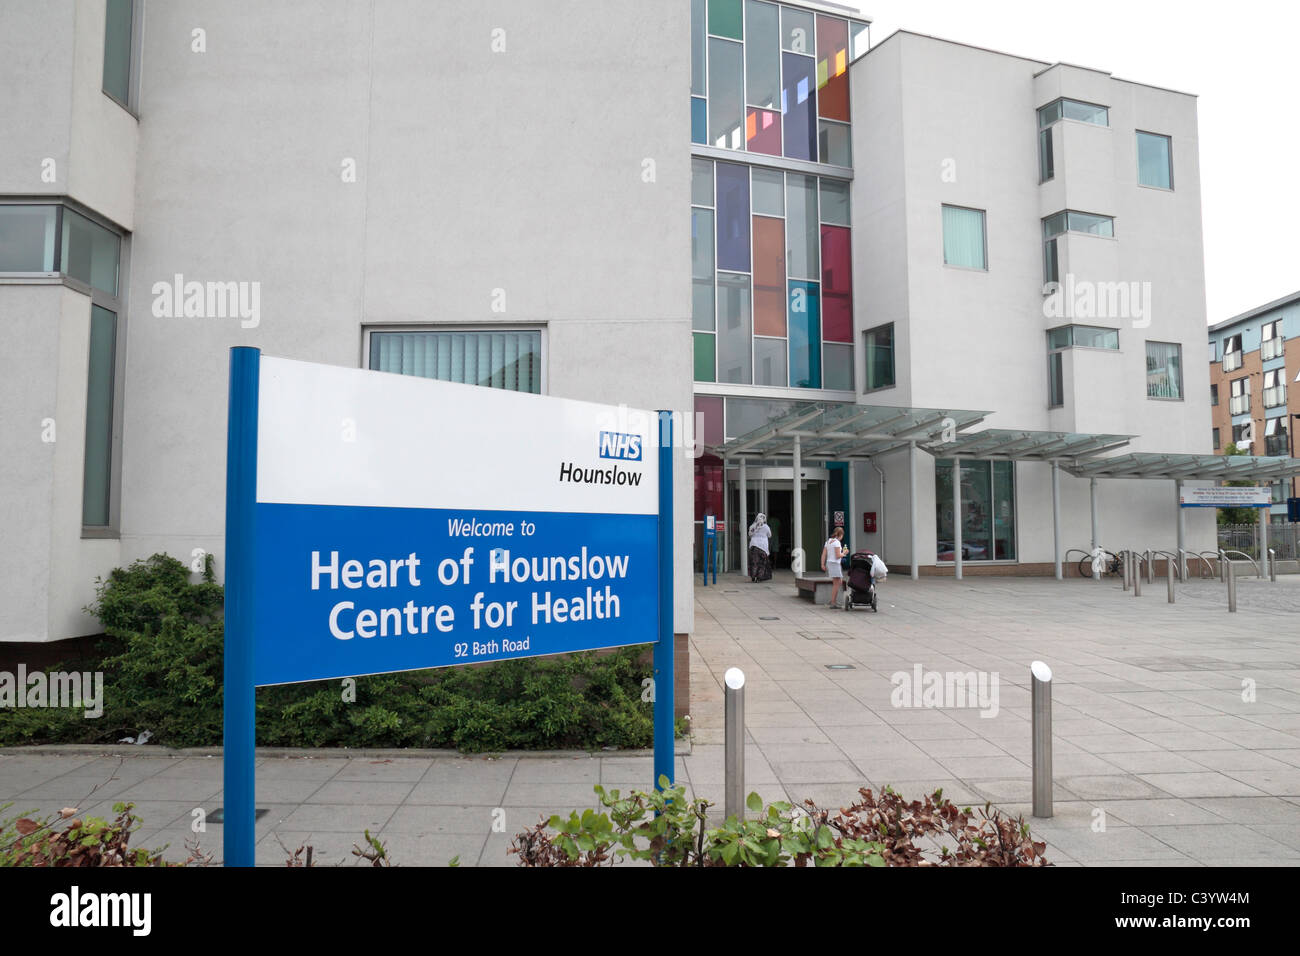 Der National Health Service (NHS) Hounslow-Zentrum für Gesundheit in Hounslow Middx, UK. Stockfoto